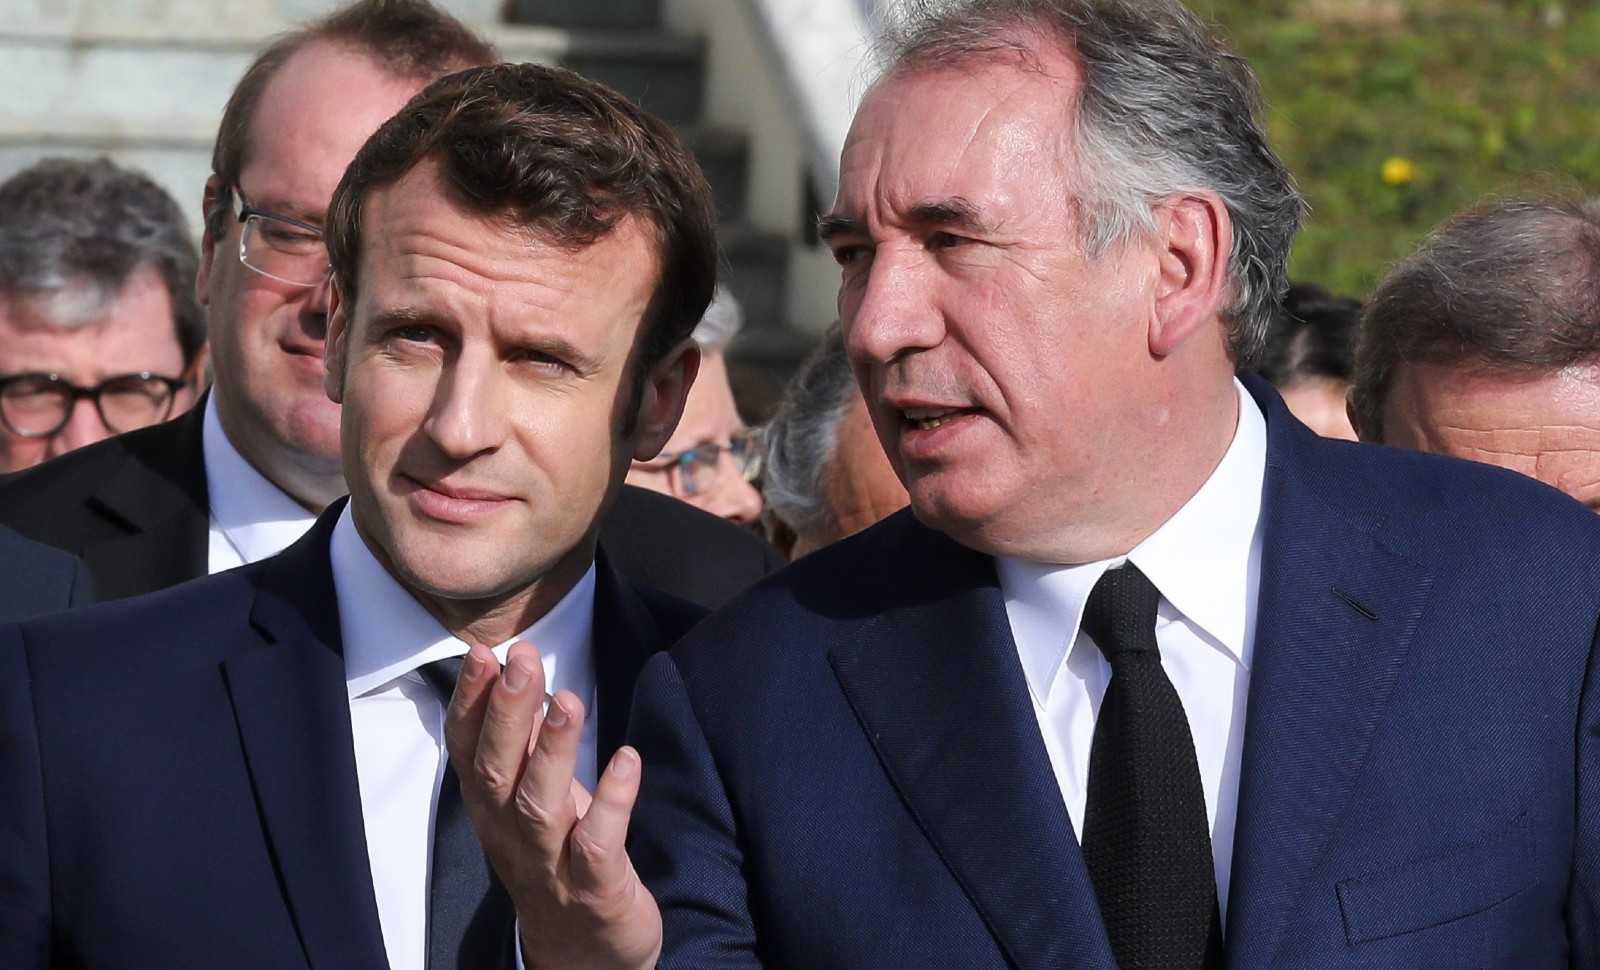 François Bayrou haut-commissaire, pour quoi faire?